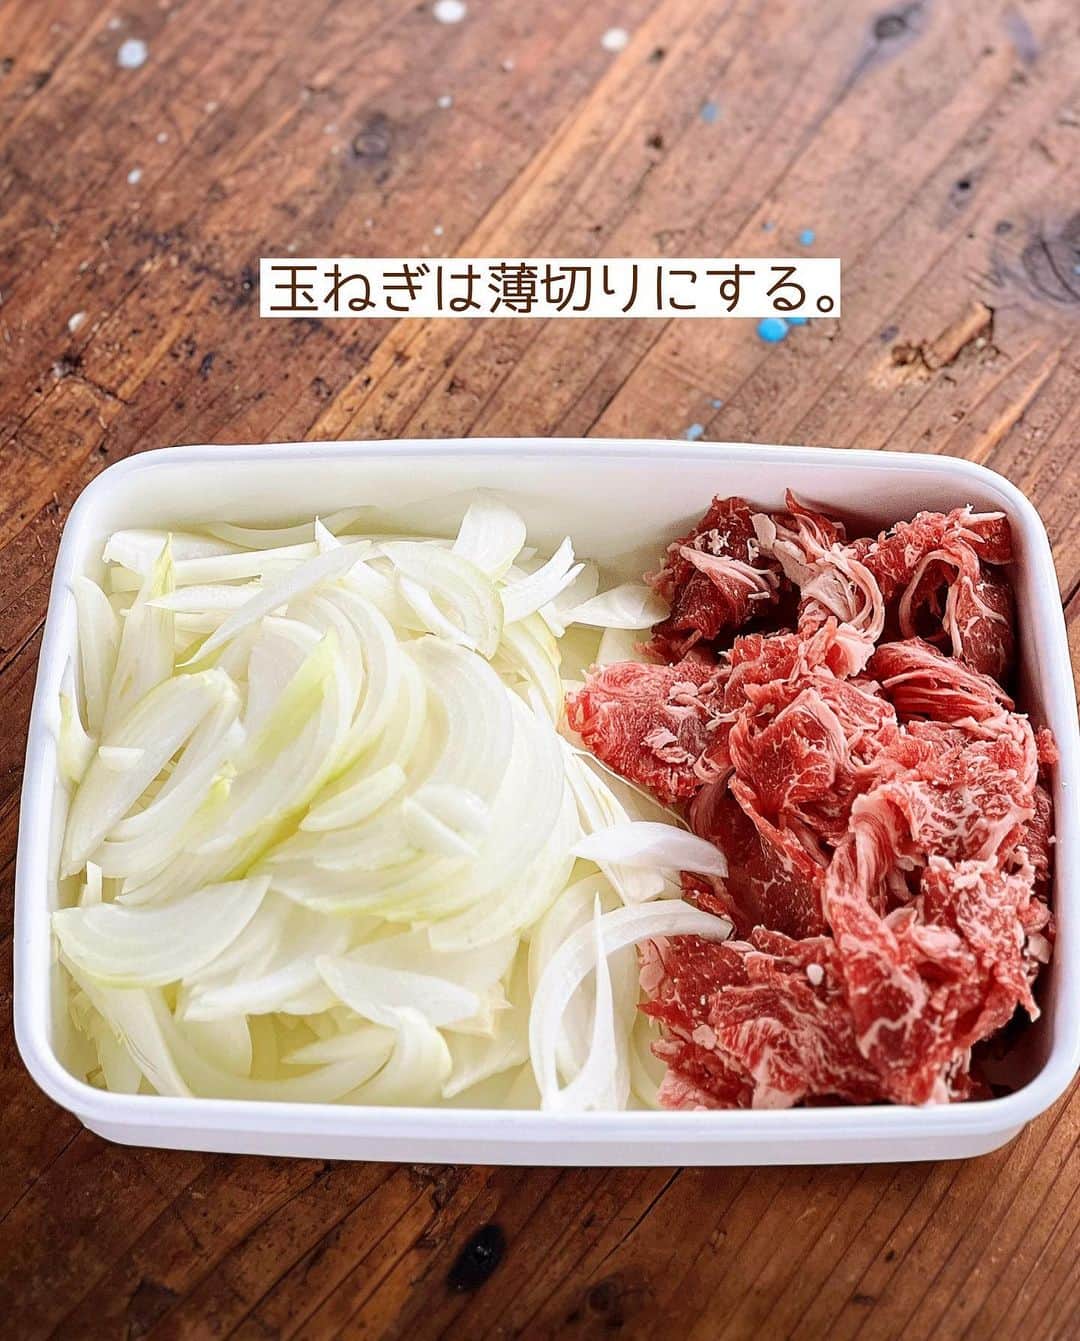 Mizuki【料理ブロガー・簡単レシピ】さんのインスタグラム写真 - (Mizuki【料理ブロガー・簡単レシピ】Instagram)「・頭が良くなるカレー🍛 ⁡ ［#レシピ ］ ーーーーーーーーーーーーーーーーーーー 頭が良くなる！？クイックトマトカレー ーーーーーーーーーーーーーーーーーーー ⁡ ⁡ ⁡ おはようございます☺️ ⁡ 今日ご紹介させていただくのは 頭が良くなる⁉️ \ クイックトマトカレー / ⁡ 昔テレビで見た ''頭が良くなるカレー'' ⁡ いつものカレーに トマトジュースを加えるだけで とっても簡単に作れます💕 カレースパイスのカルダモンと トマトジュースのリコピン効果で 脳への血流がアップして 活性化するそうですよ〜‼️ ⁡ これ、頭が良くなるかは置いといて🖐️ トマトジュースの適度な酸味で とってもおいしく仕上がります🤭 ⁡ 今回はお肉と玉ねぎだけですぐできる クイックカレーにしてみましたので よかったらお試しくださいね💕 ⁡ ⁡ ⁡ 💬💬💬 謎の暮らしアカウント作りました🏠 変なライブはこっちでやってます🤫 →(@mizuki_kurashi ) ⁡ ⁡ 【簡単・時短・節約レシピ更新中🔻】 @mizuki_31cafe ⁡ ⁡ ⁡ ＿＿＿＿＿＿＿＿＿＿＿＿＿＿＿＿＿＿＿ 【4人分くらい】 牛(又は豚)薄切り肉...200g 玉ねぎ...1 1/2個 サラダ油...小2 ⚫︎水...300ml ⚫︎トマトジュース(無塩)...300ml カレールー...80g ごはん...適量 ⁡ 1.玉ねぎは薄切りにする。 2.フライパンに油を中火で熱し、肉と玉ねぎを炒める。肉の色が変わったら⚫︎を加え、煮立ったら蓋をして5分煮る。 3.弱火にし、ルーを加えて溶かし、とろみが付くまで少し煮る。 4.器にごはんを盛り、3をかける。 ￣￣￣￣￣￣￣￣￣￣￣￣￣￣￣￣￣￣￣ ⁡ ⁡ 《ポイント》 ♦︎今回は水とトマトのジュースを1：1の割合で加えました♩全量トマトジュースにしてもおいしいです♩ ♦︎お肉は牛こま、牛バラ、豚こま、豚バラがおすすめです！鶏肉も小さめに切ればレシピ通りの煮込み時間で火が通ります♩ ♦︎玉ねぎ［1 1/2］=［1個半］です！ ♦︎カレールーの種類によって分量は調節してください☆今回はゴールデンカレーの中辛を使用しました♩ ♦︎仕上げに普段のカレーに加えている(隠し味的な)調味料を加えていただいても♩  ♦︎当時テレビでは、生のトマトやトマト缶ではなく、繊維が壊れているトマトジュースだからこそ効果がある！！と言っていました♩ ⁡ ⁡ ⁡ ⁡ ⁡ ⁡ 𖤣𖥧𖥣𖡡𖥧𖤣✨ 愛用している調理器具や器などは #楽天ROOMに載せてます ‎𐩢𐩺 (ハイライトから飛べます🛍) ⁡ ⁡ ⁡ ⁡ ⁡ ⁡ 🔶全国の書店・ネット書店で発売中🔶 ⁡ ✼••┈┈┈┈┈••✼••┈┈┈┈┈••✼ 今日のごはんこれに決まり！ ‎𓊆#Mizukiのレシピノート 500品𓊇 ✼••┈┈┈┈┈••✼••┈┈┈┈┈••✼ ⁡ ˗ˏˋ おかげさまで25万部突破 ˎˊ˗ 料理レシピ本大賞準大賞を受賞しました🙇‍♀️ ⁡ 6000点の中からレシピを厳選し まさかの【500レシピ掲載】❣️ 肉や魚のメインおかずはもちろん 副菜、丼、麺、スープ、お菓子 ハレの日のレシピ、鍋のレシピまで 全てこの一冊で完結𓌉◯𓇋✨ ⁡ ⁡ ⁡ ⁡ ✼••┈┈┈••✼••┈┈┈••✼ Mizukiのカンタン手作り   𓊆 #3時のおやつ 𓊇 ✼••┈┈┈••✼••┈┈┈••✼ ⁡ 『3分クッキング』で連載中の 「Mizukiのカンタン手作り」 ‎4年分のおやつが1冊になりました！ ❝オーブンなしで❞ 身近な材料と道具でできる 簡単、手軽なおやつを80品🍪 ⁡ ⁡ ⁡ ⁡ ⁡ #頭が良くなるカレーm #頭が良くなるカレー #カレー #ランチ #カレーライス #カレーレシピ #トマトレシピ #トマトジュース #節約料理 #簡単料理  #時短料理 #料理 #mizukiレシピ  #アルモンデ #時短レシピ #節約レシピ #簡単レシピ」5月20日 6時50分 - mizuki_31cafe